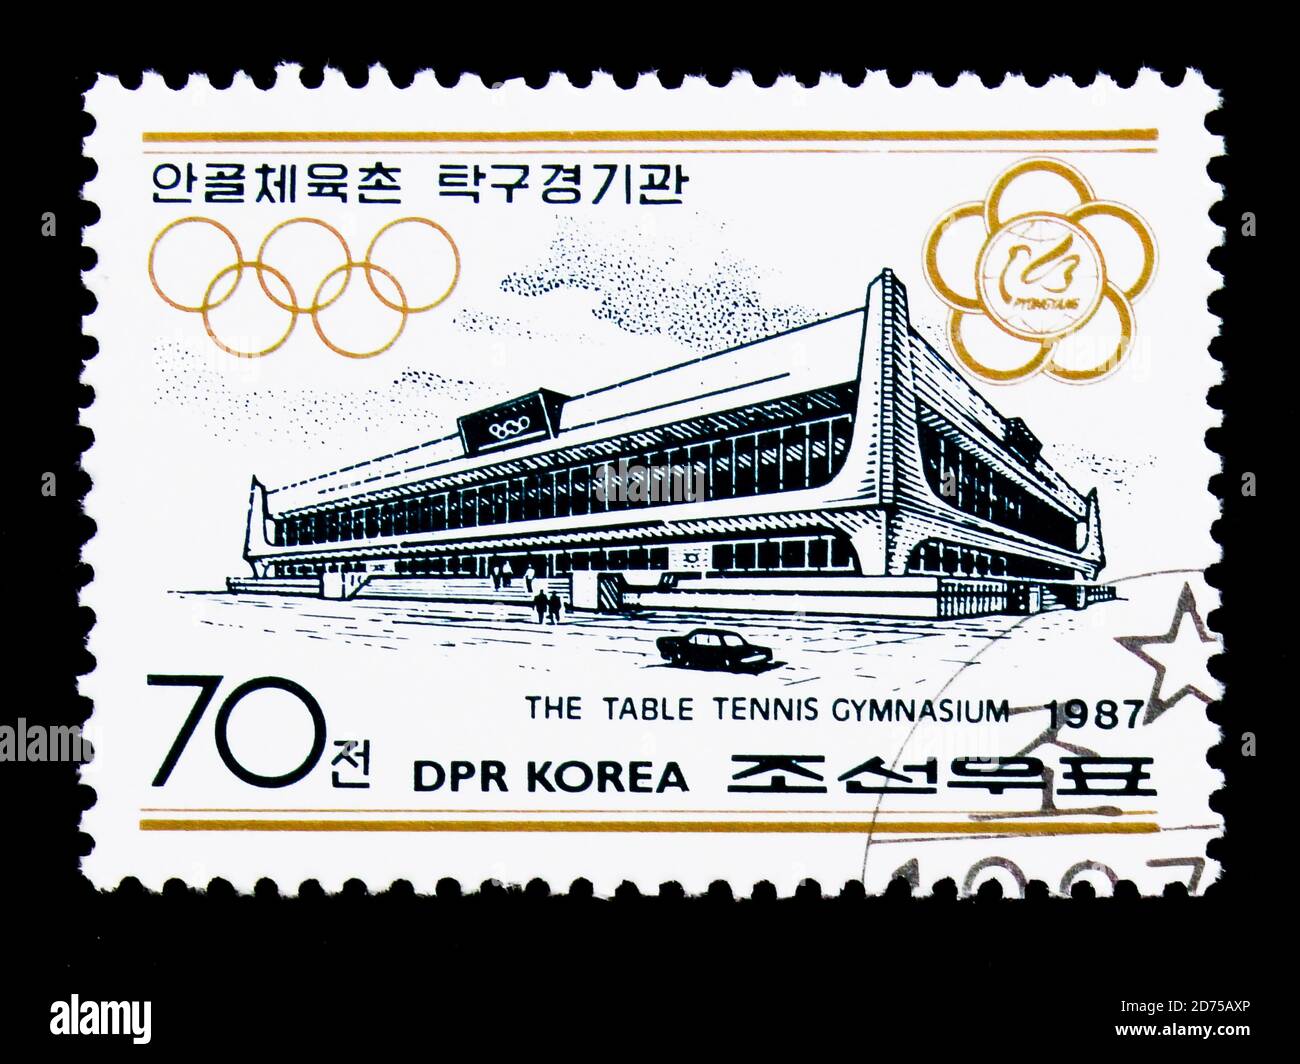 MOSCOU, RUSSIE - 25 NOVEMBRE 2017 : un timbre imprimé en république populaire démocratique de Corée montre le gymnase de tennis de table, des installations de compétition Banque D'Images